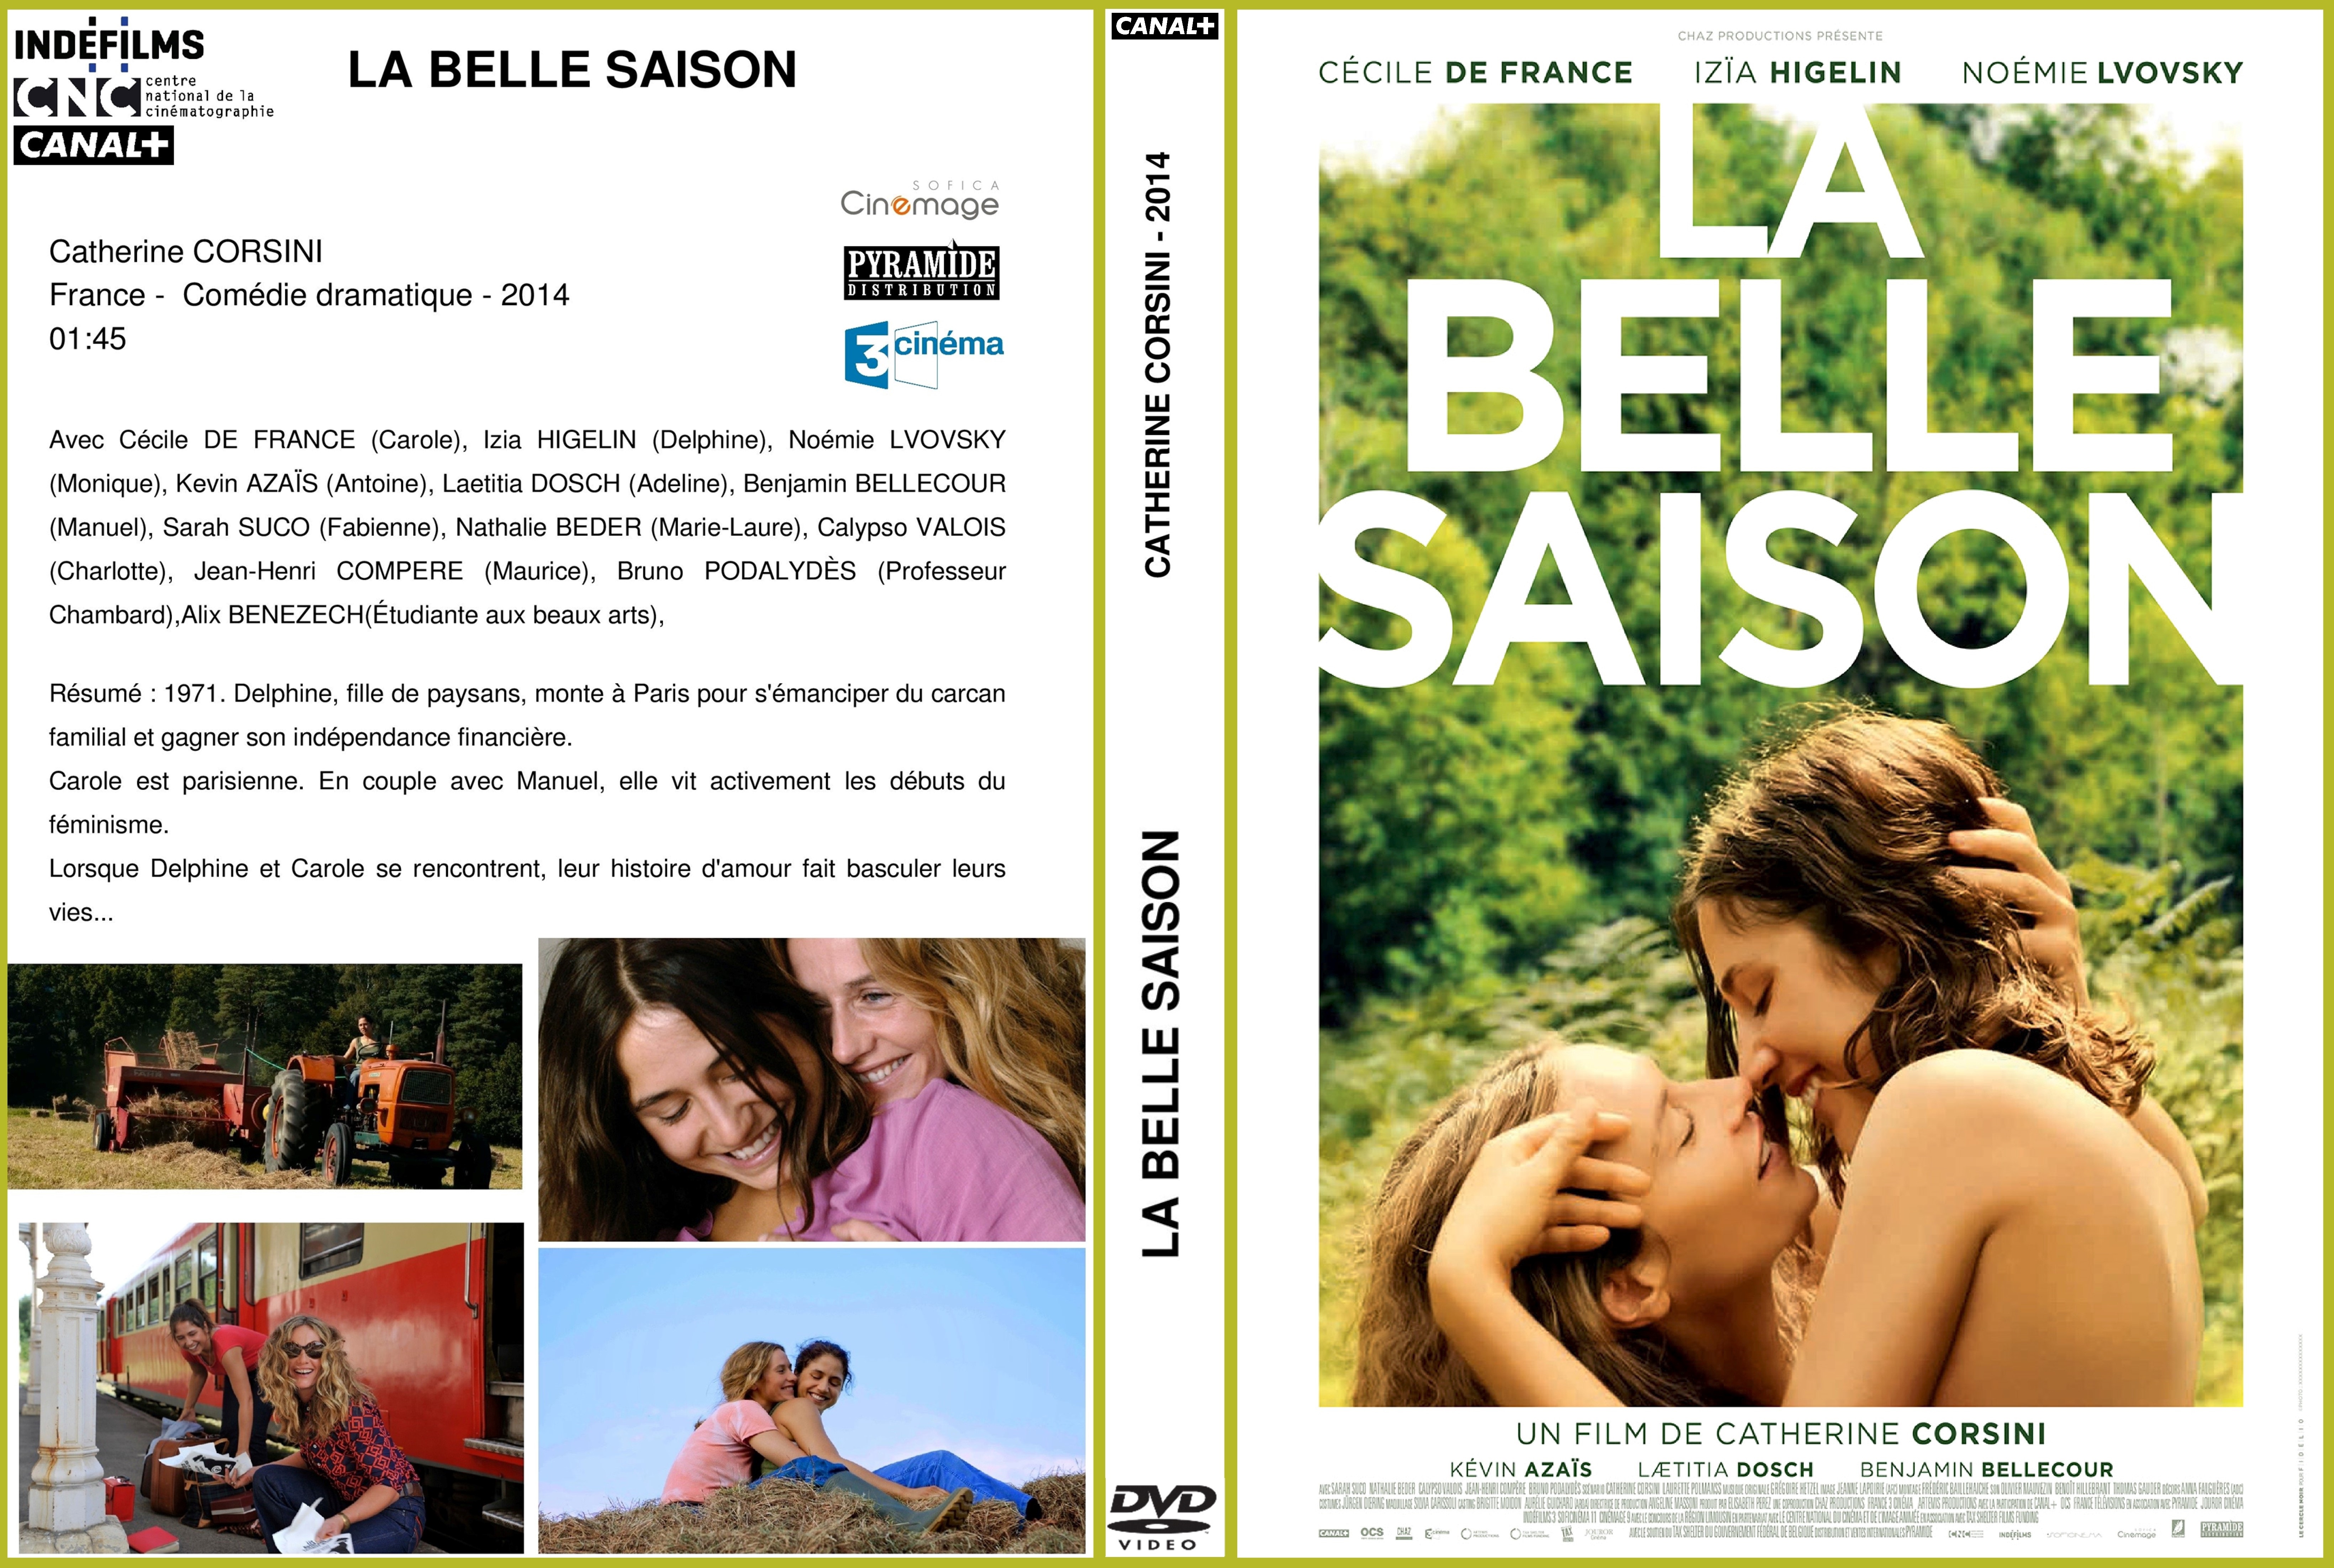 Jaquette DVD La belle saison custom